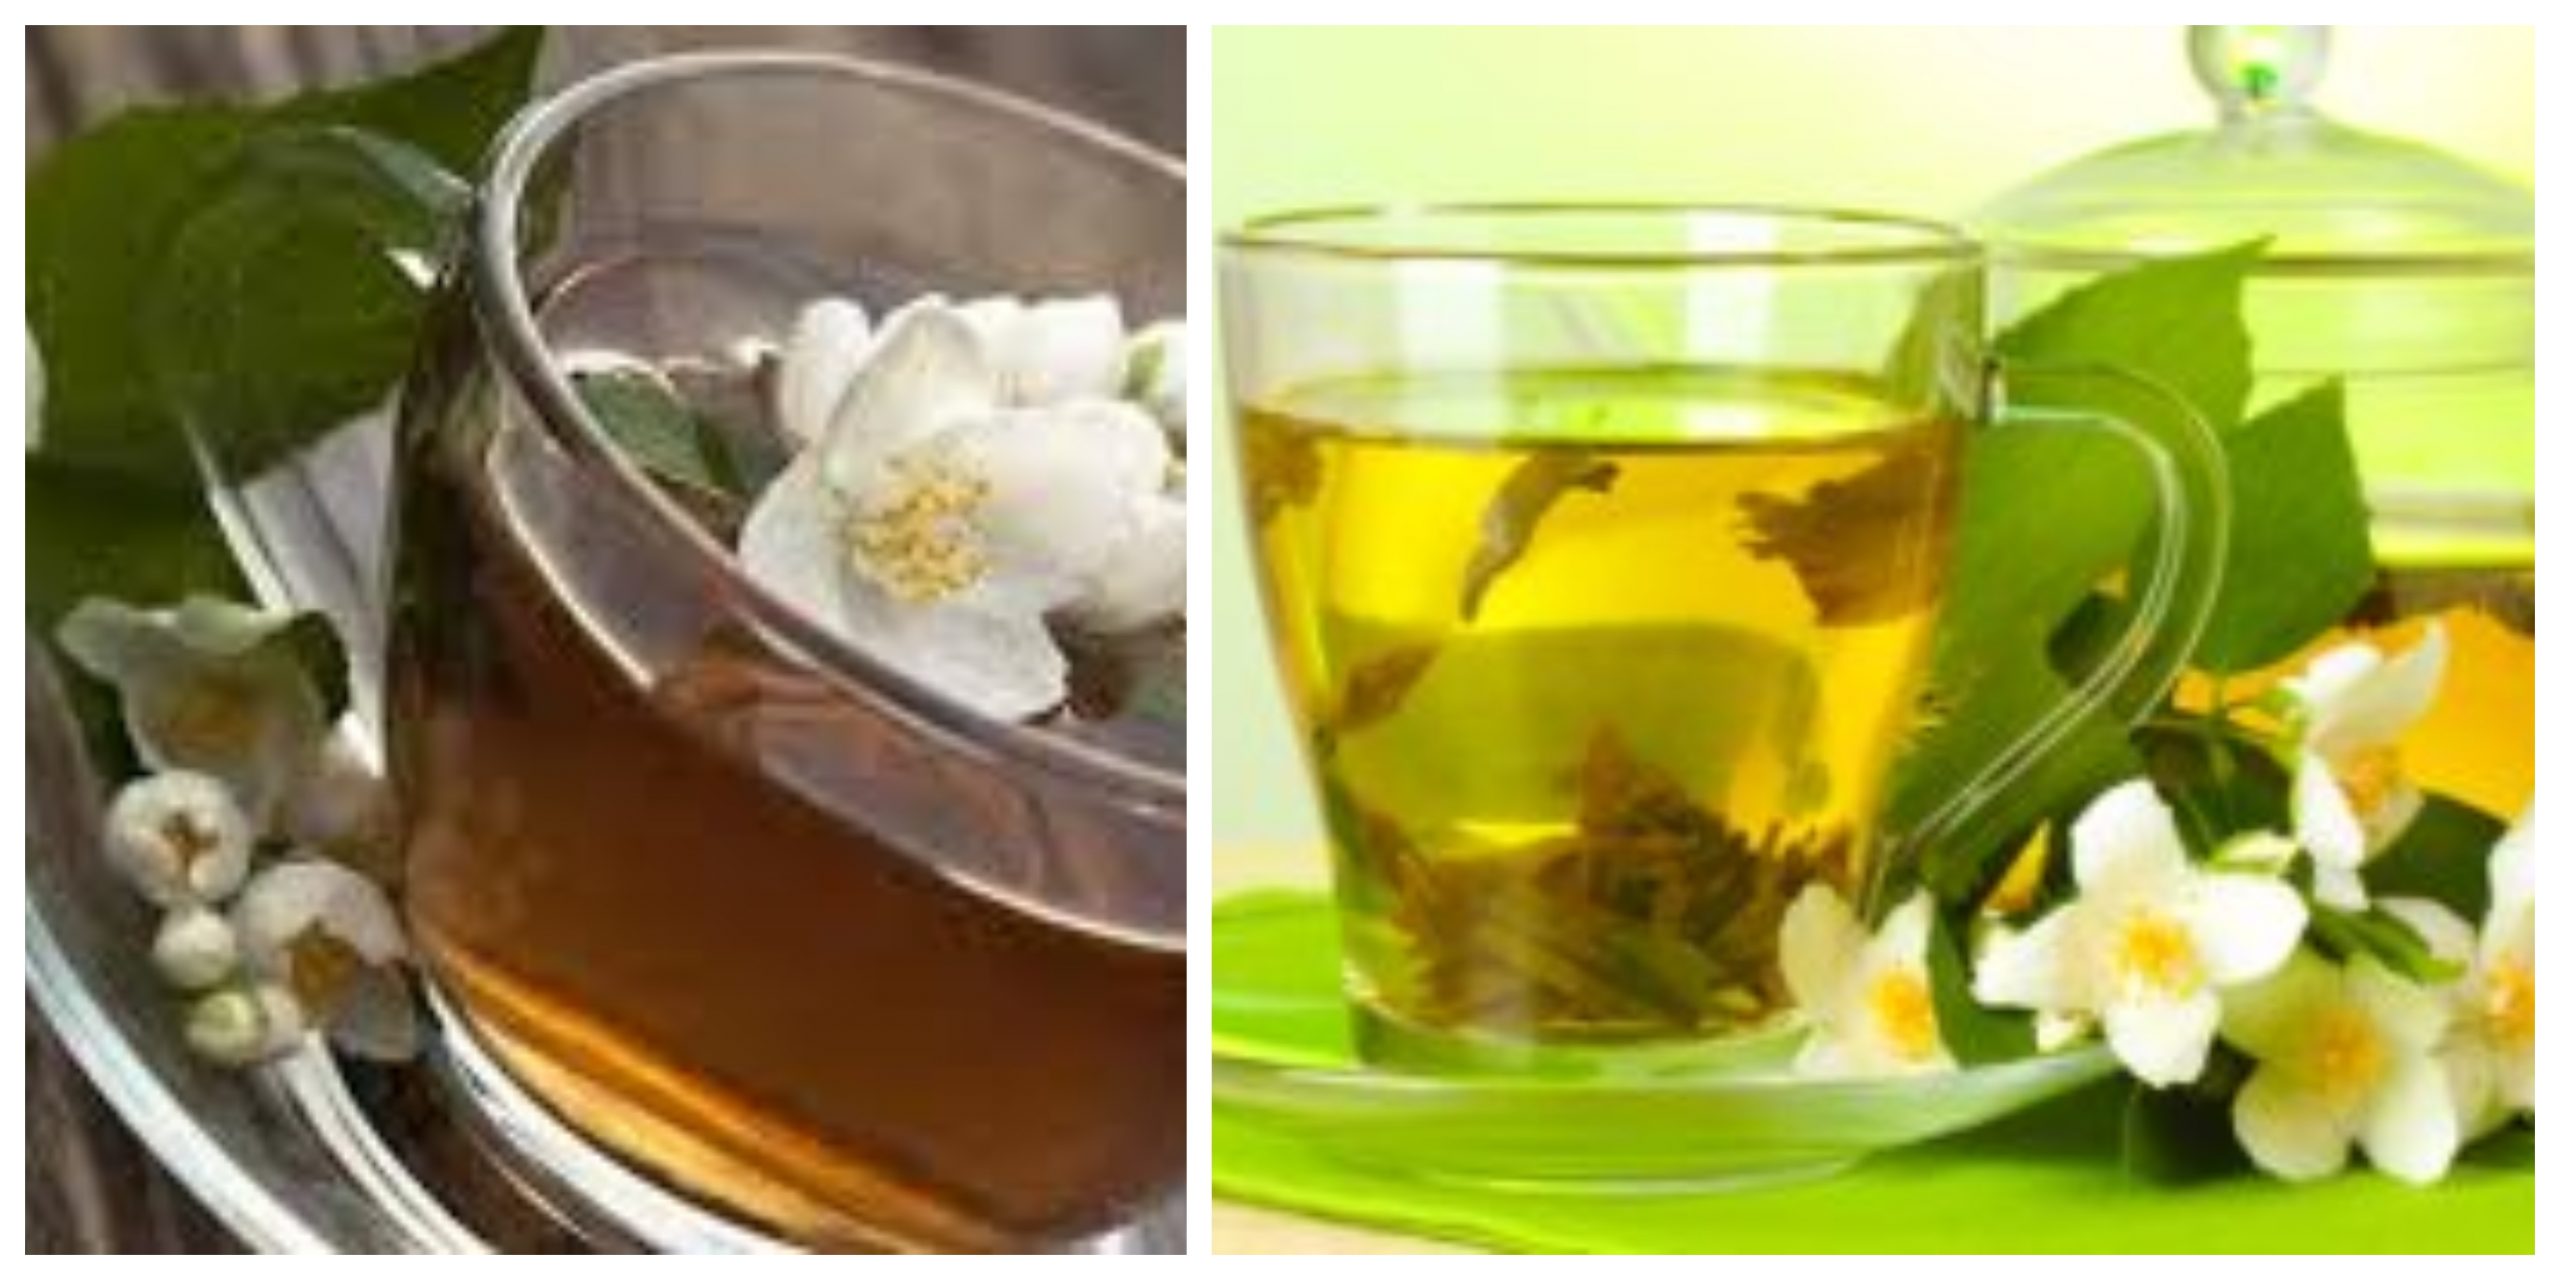 وصفات لإعداد شاي الياسمين بطريقة سهلة في المنزل